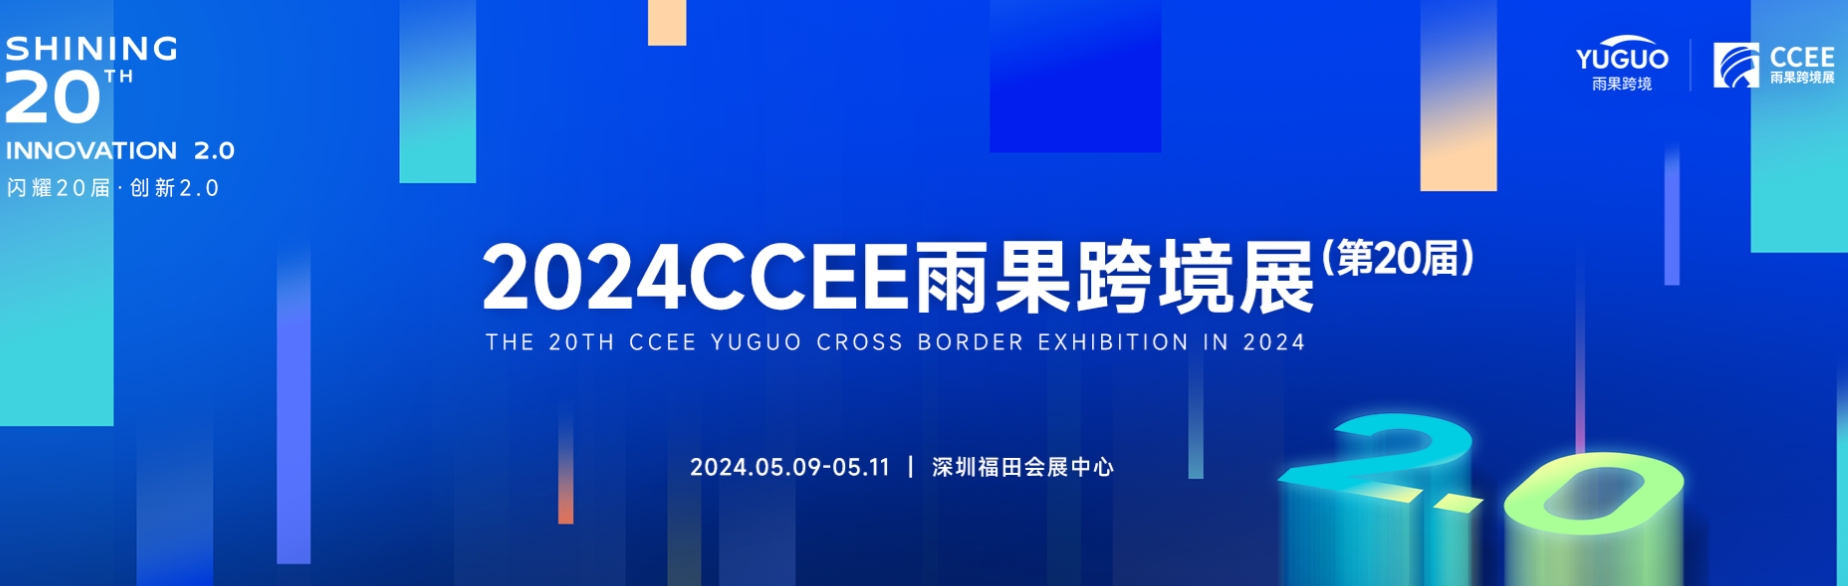 2024第二十届CCEE深圳跨境电商展览会